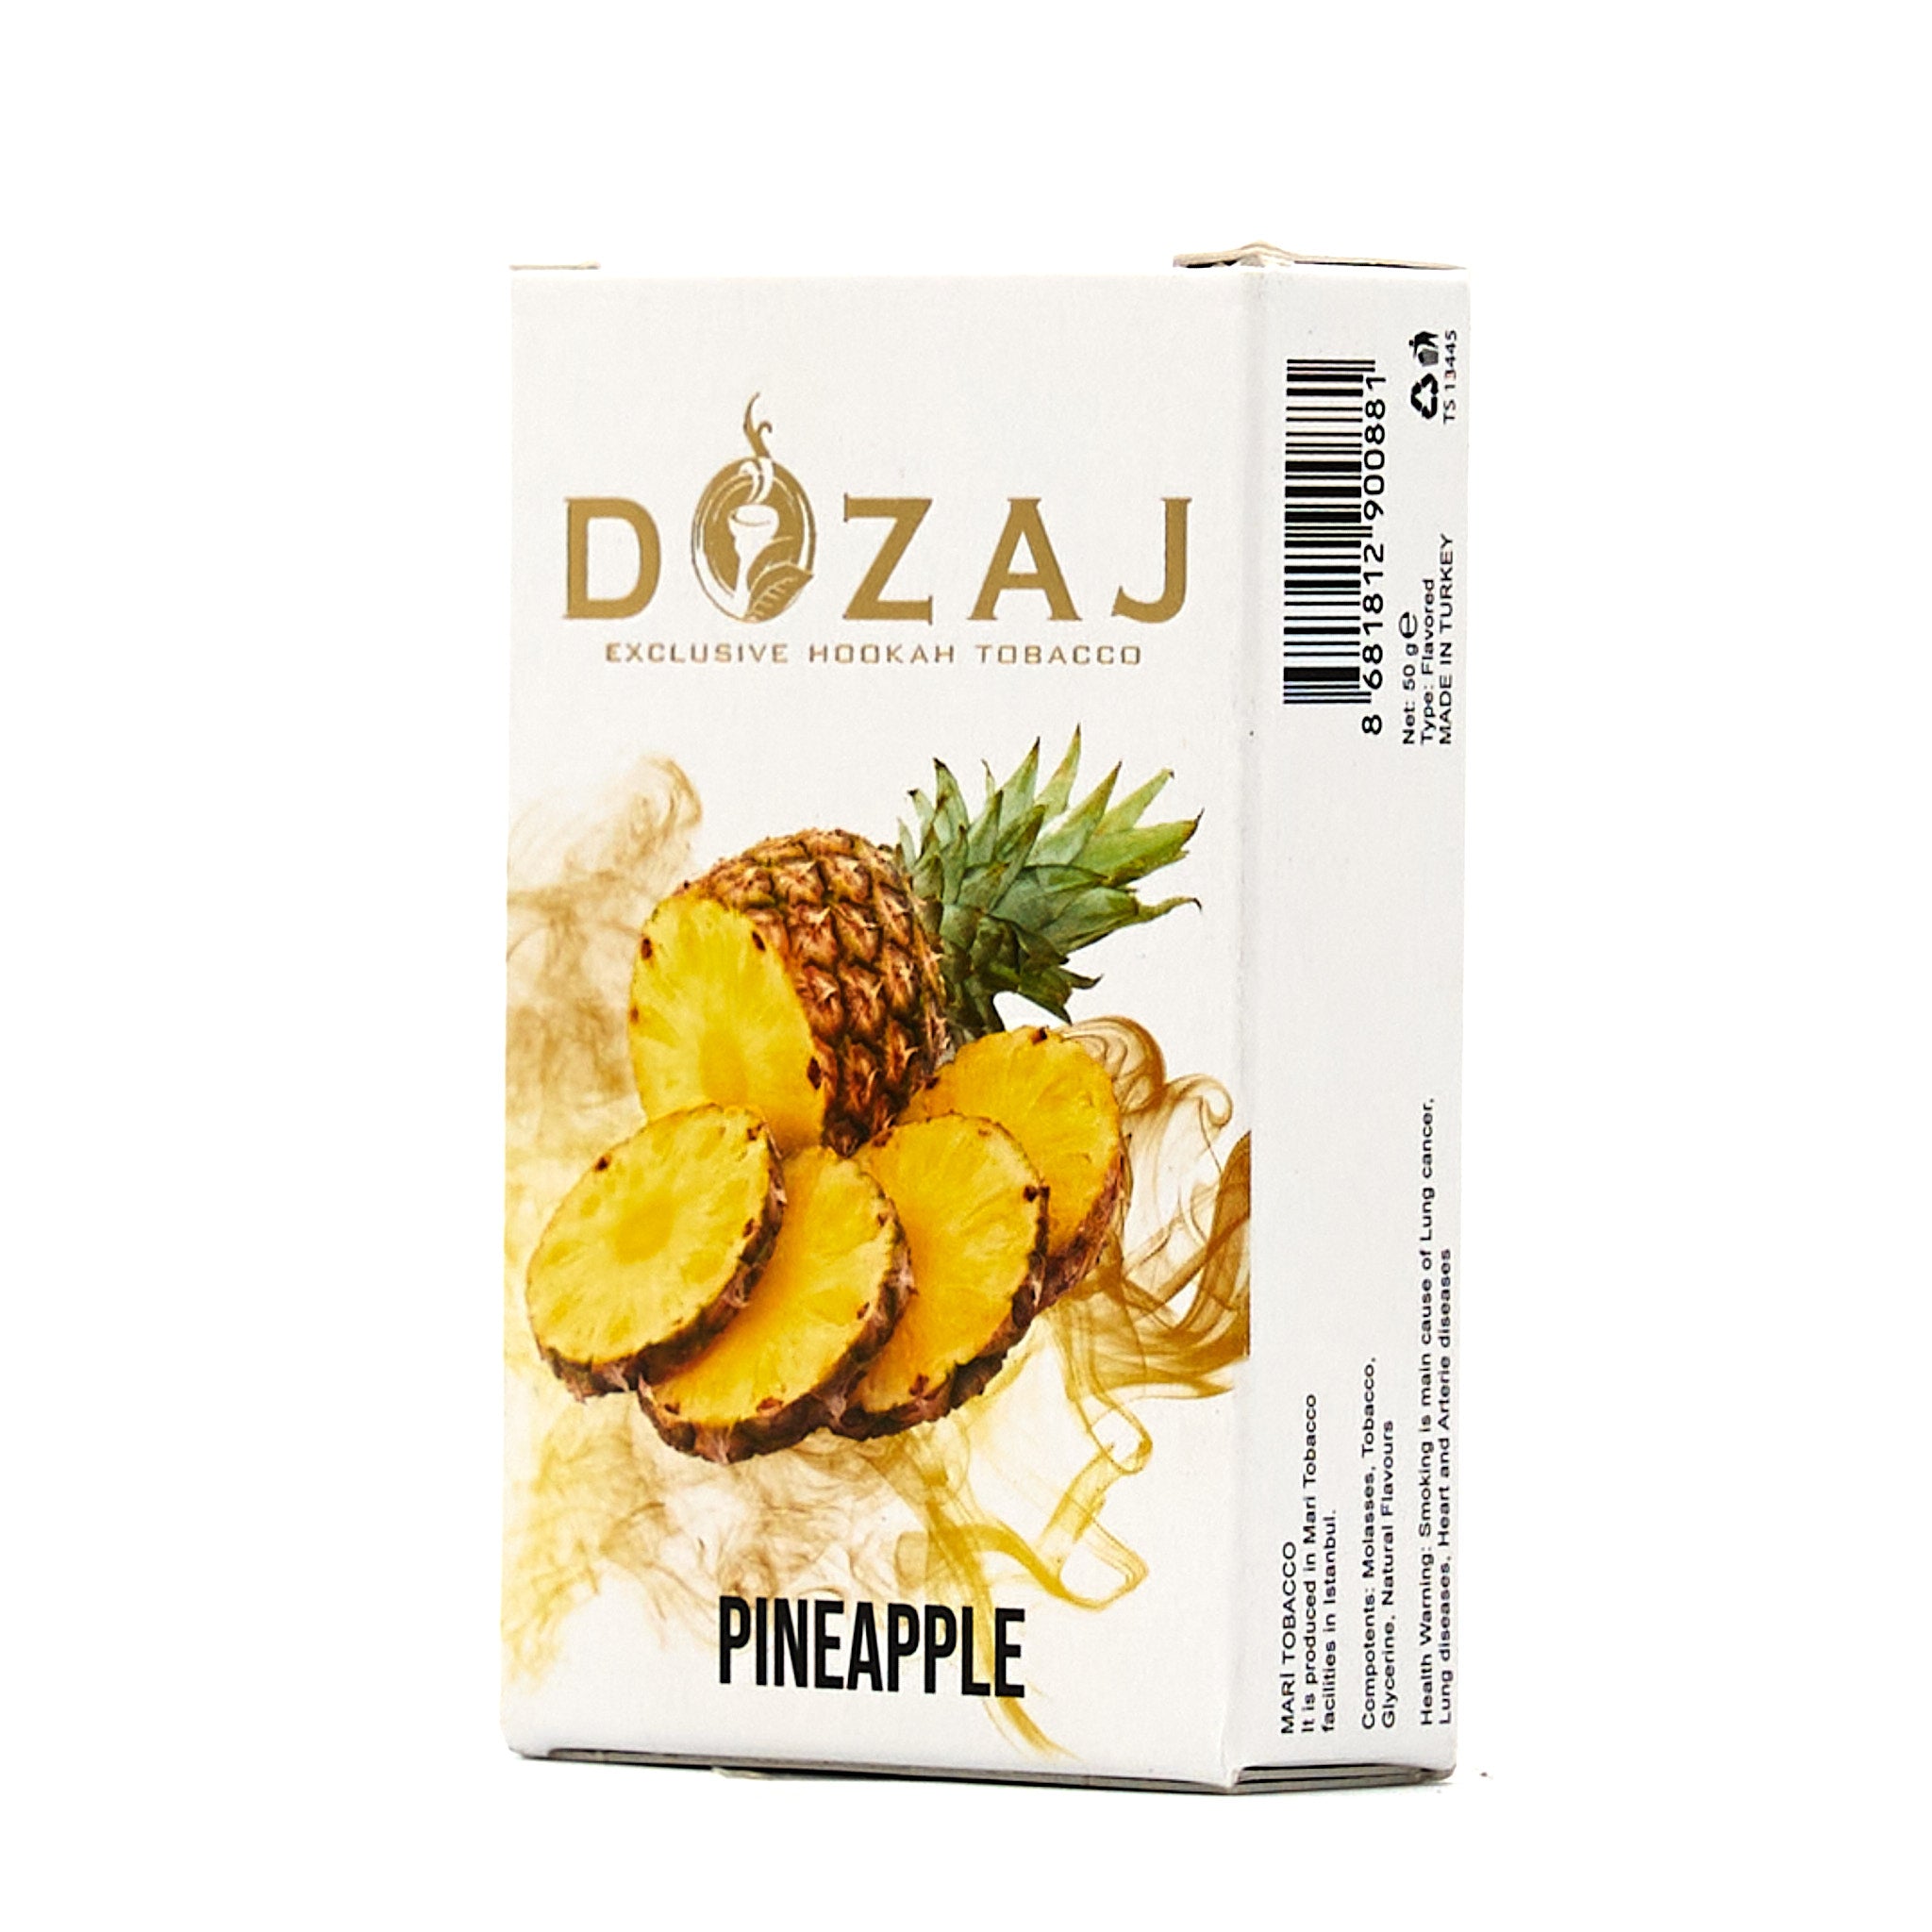 Pineapple / パイナップル (50g)